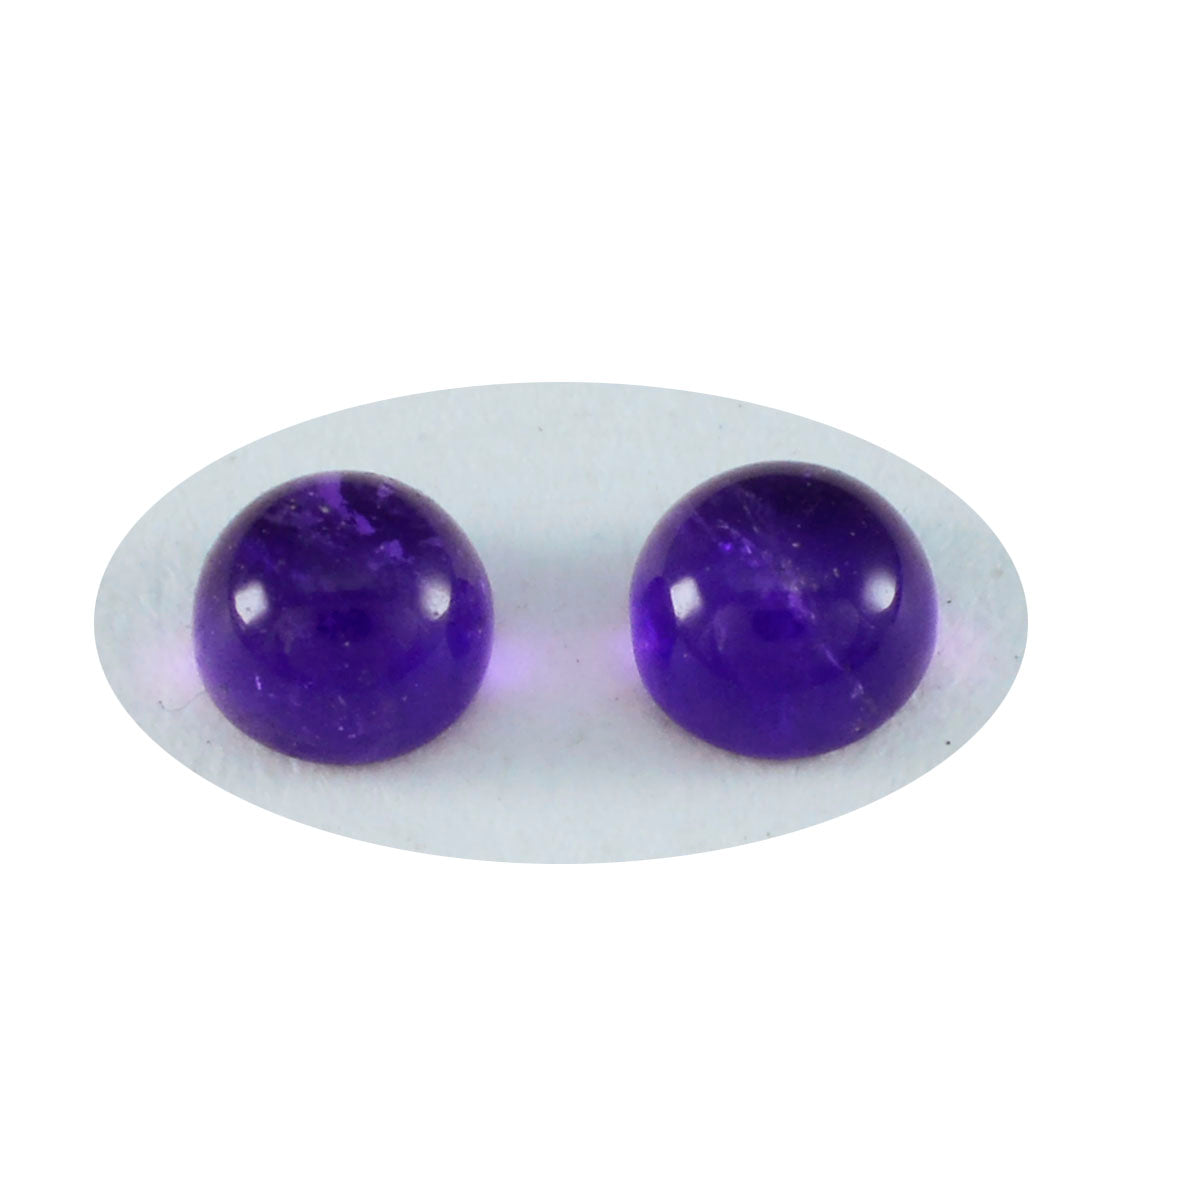 Riyogems 1pc cabochon d'améthyste violet 5x5mm forme ronde qualité impressionnante pierres précieuses en vrac